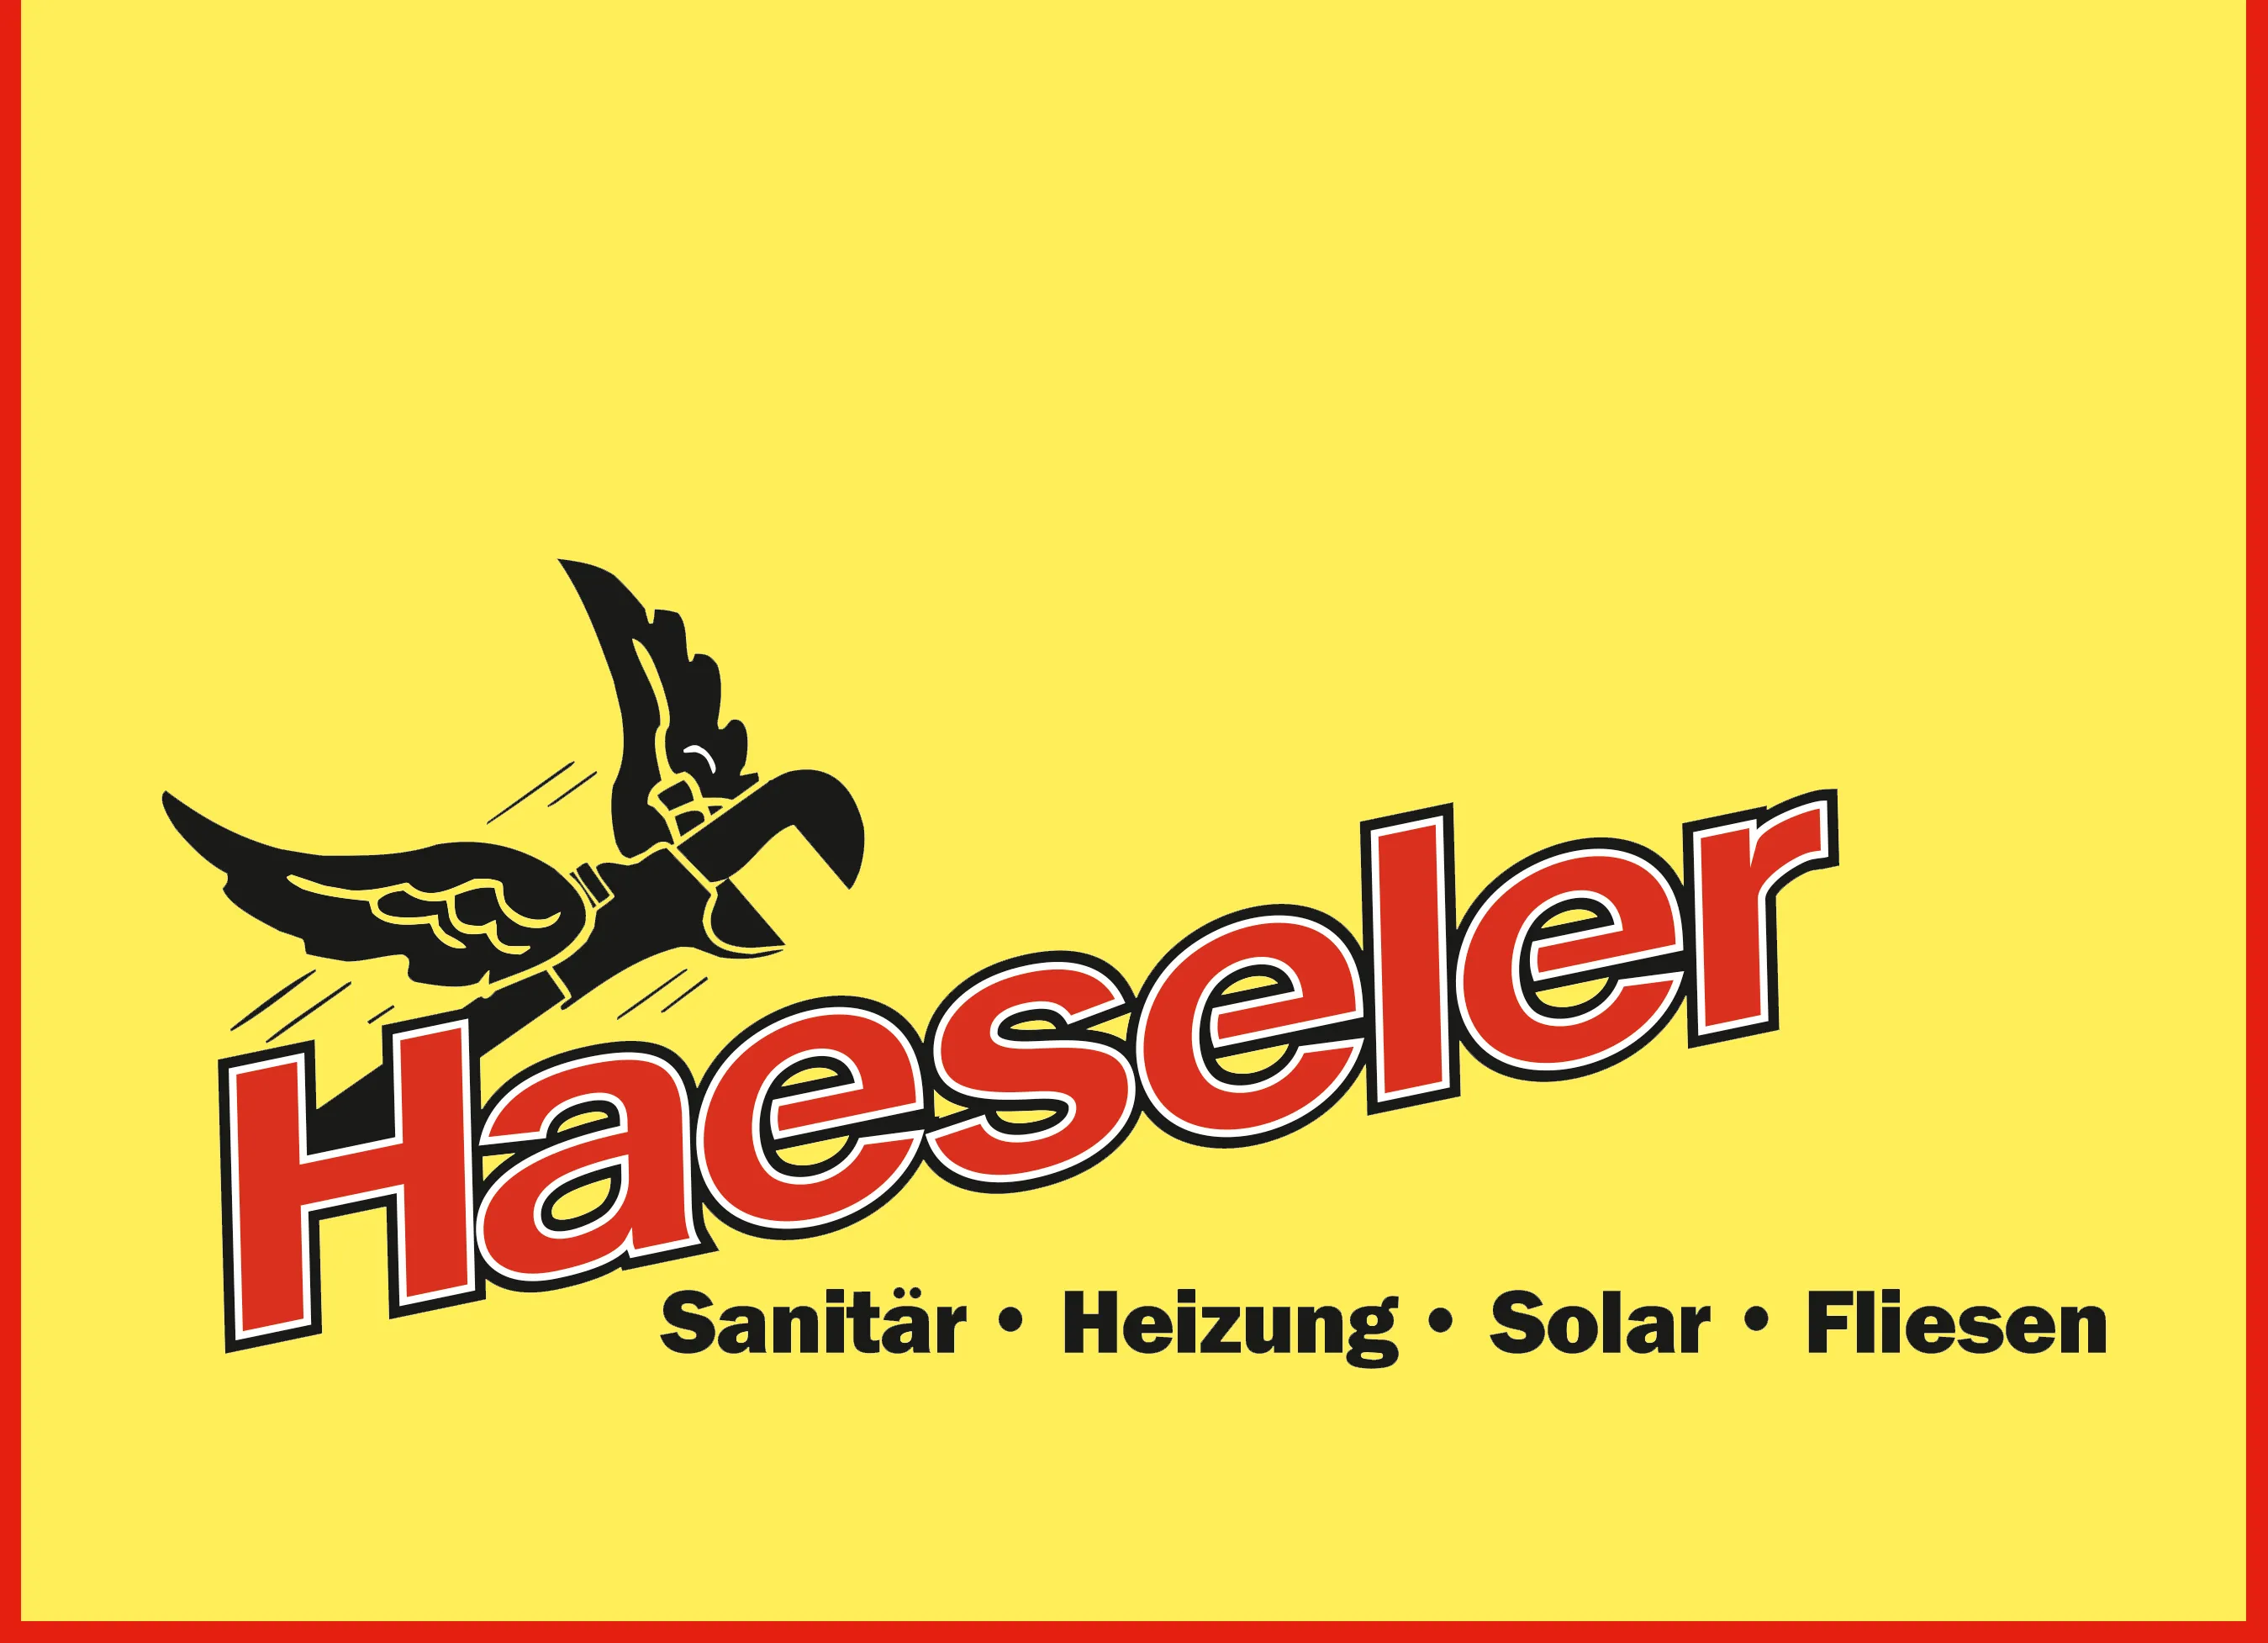 Haeseler.png